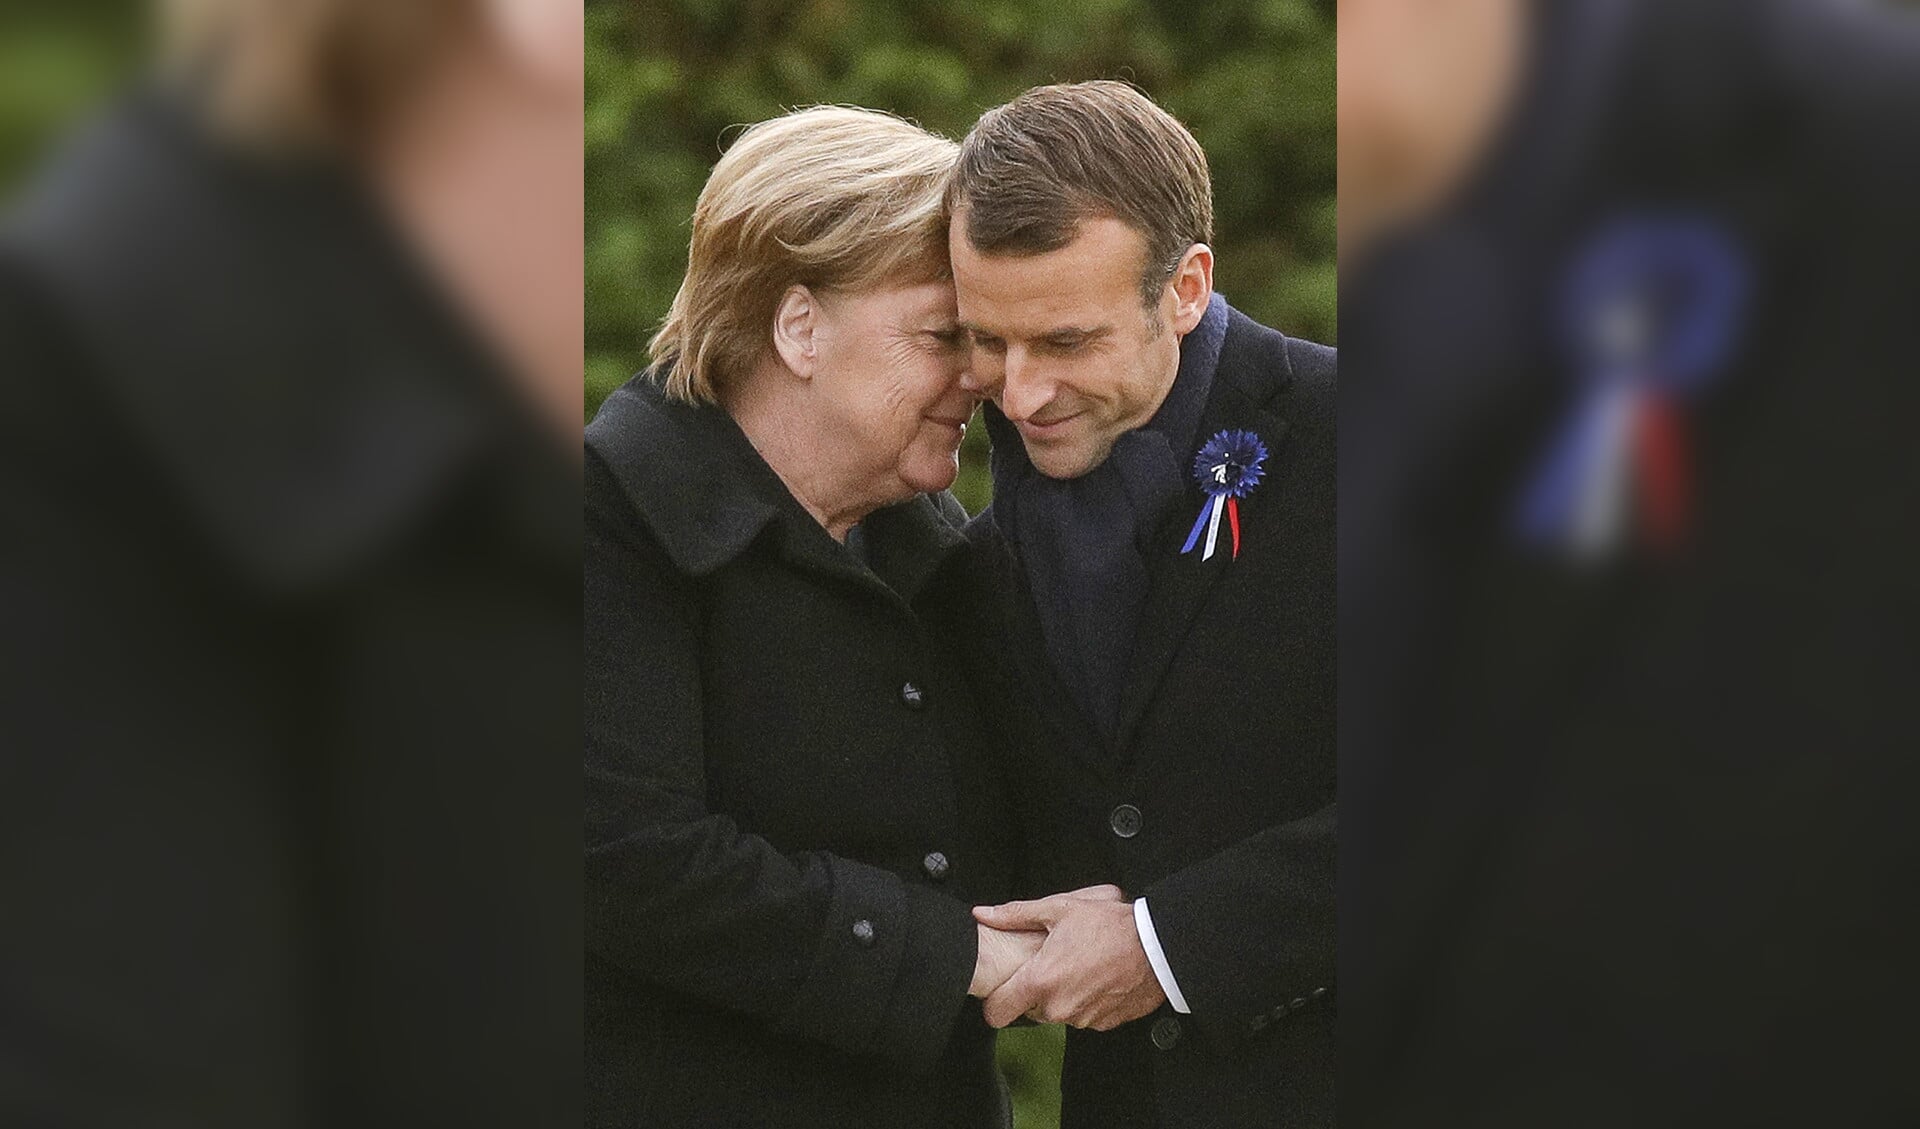 De Duitse bondskanselier Angela Merkel en de Franse president Emmanuel Macron omhelzen elkaar, nadat ze een plaquette hebben onthuld bij Compiègne in Noord-Frankrijk.  Op die plek werd op 11 november 1918 in een treinwagon de wapenstilstand getekend die een einde maakte aan de Eerste Wereldoorlog